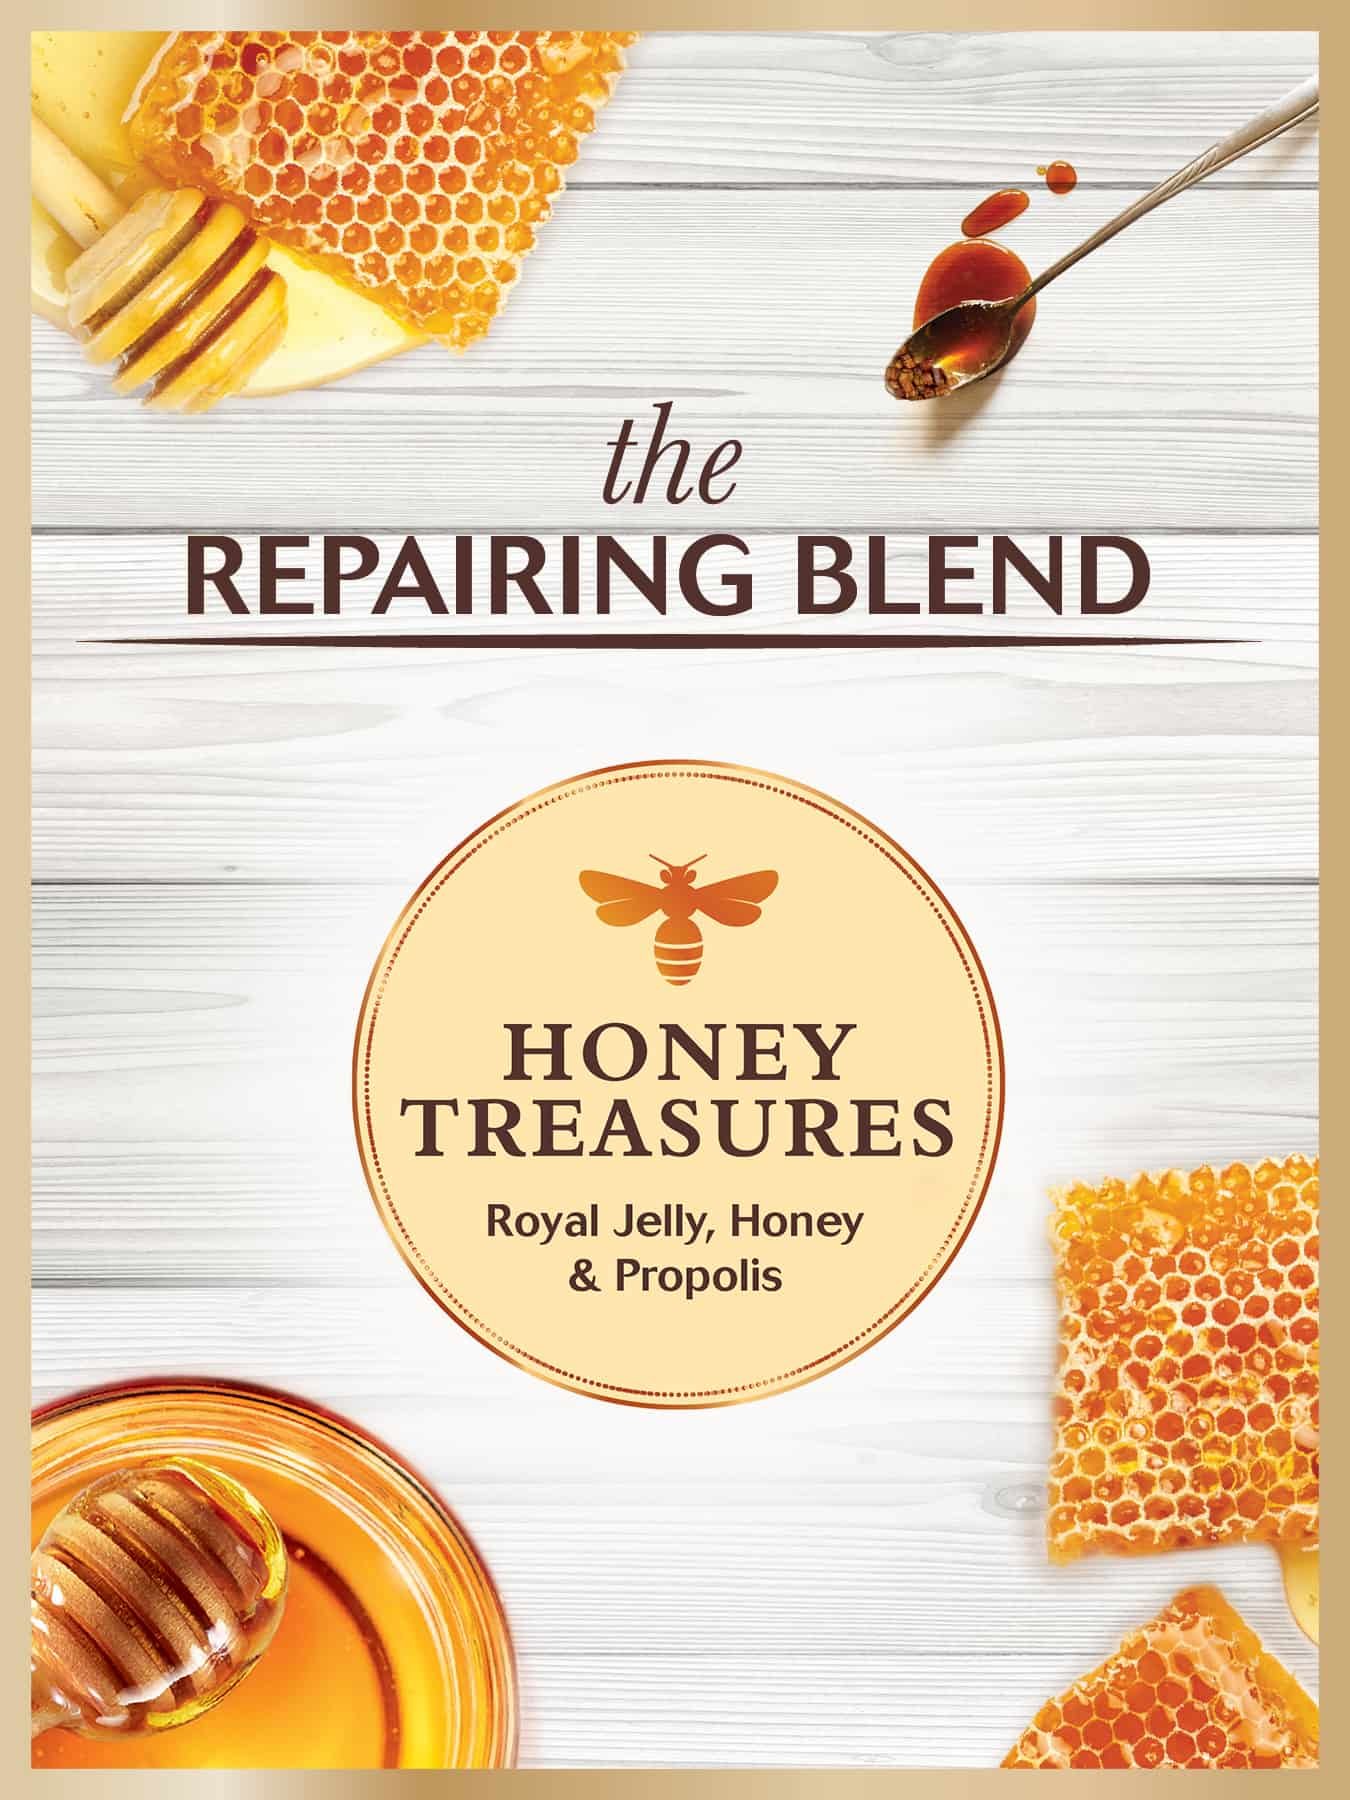 Garnier Whole Blends Honey Treasures Ingredients